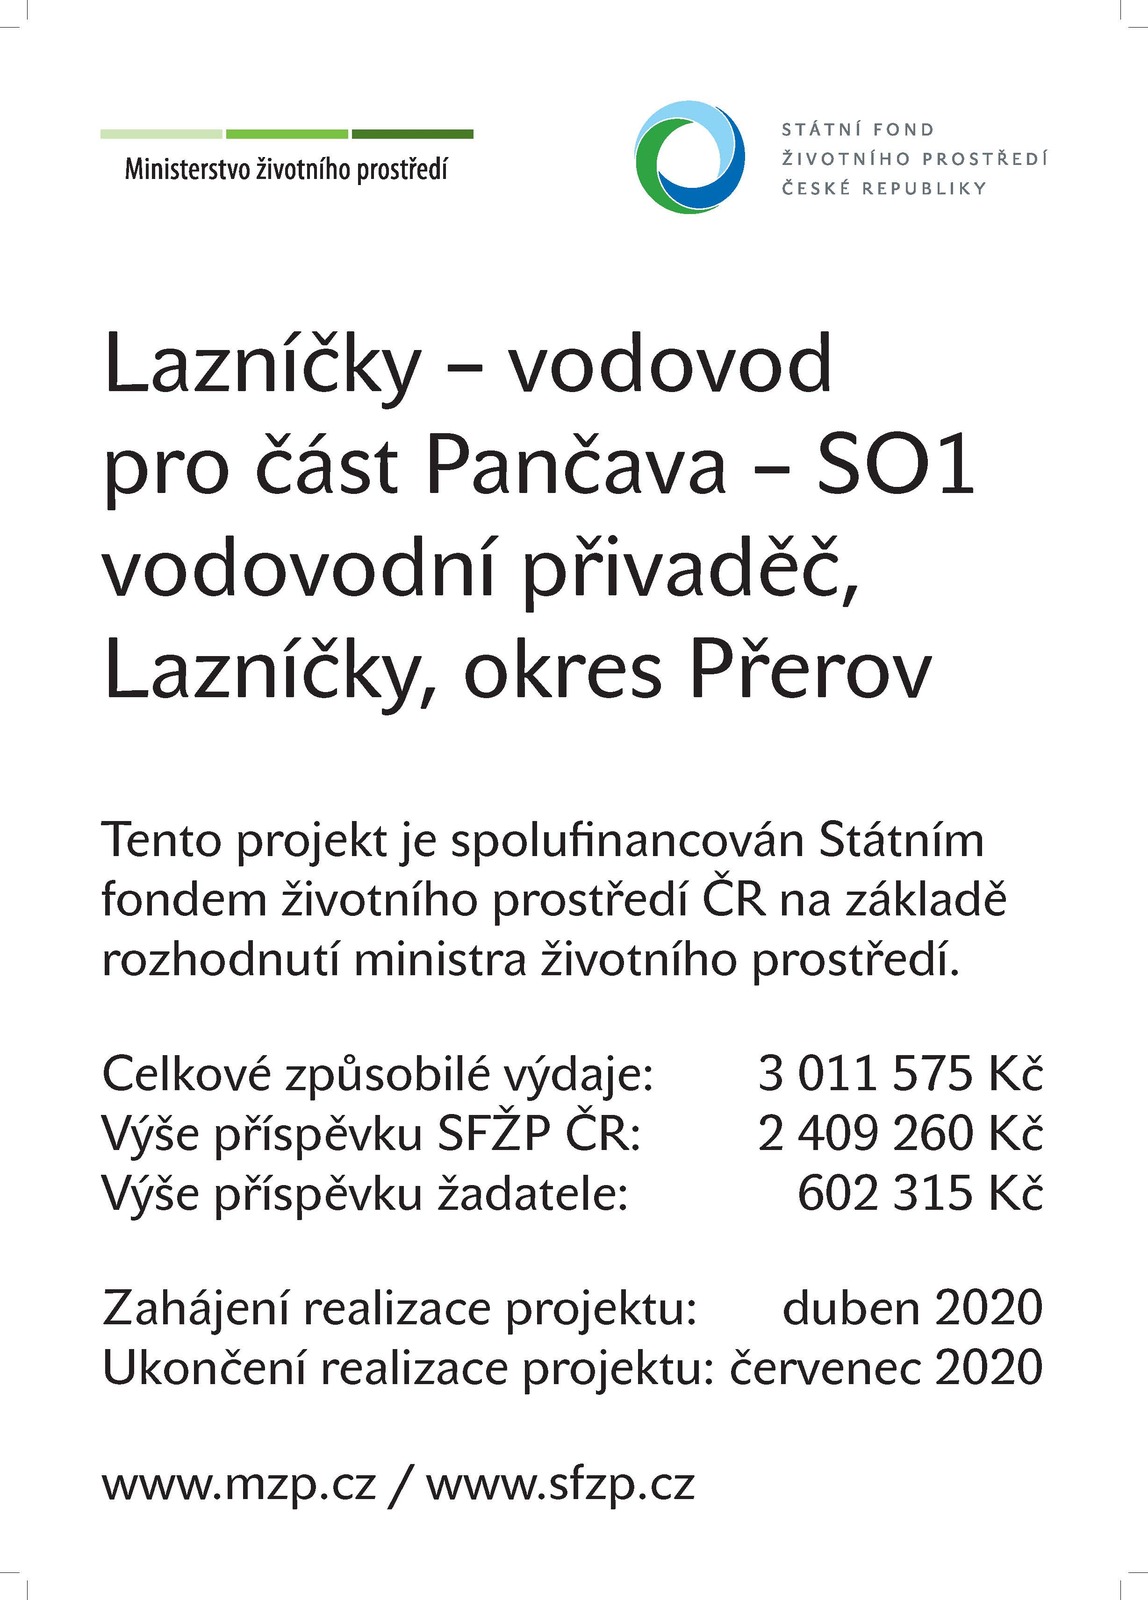 NPŽP_Plakát A3_Lazníčky_vodovod.jpg